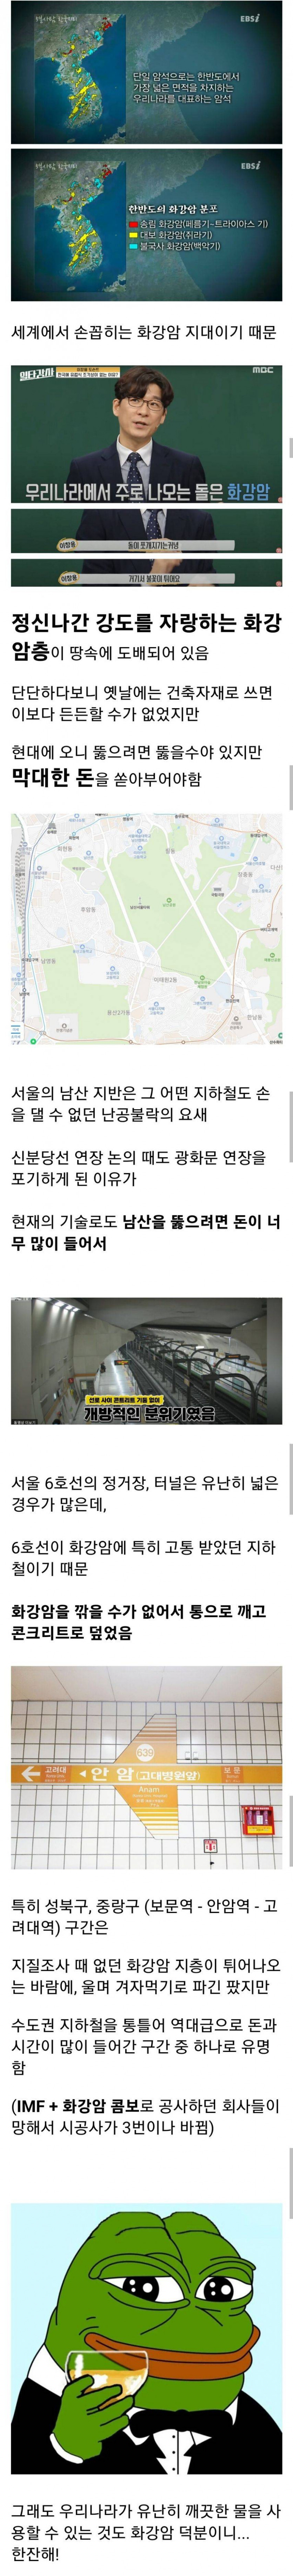 한국이 땅 뚫기 힘든이유(0)